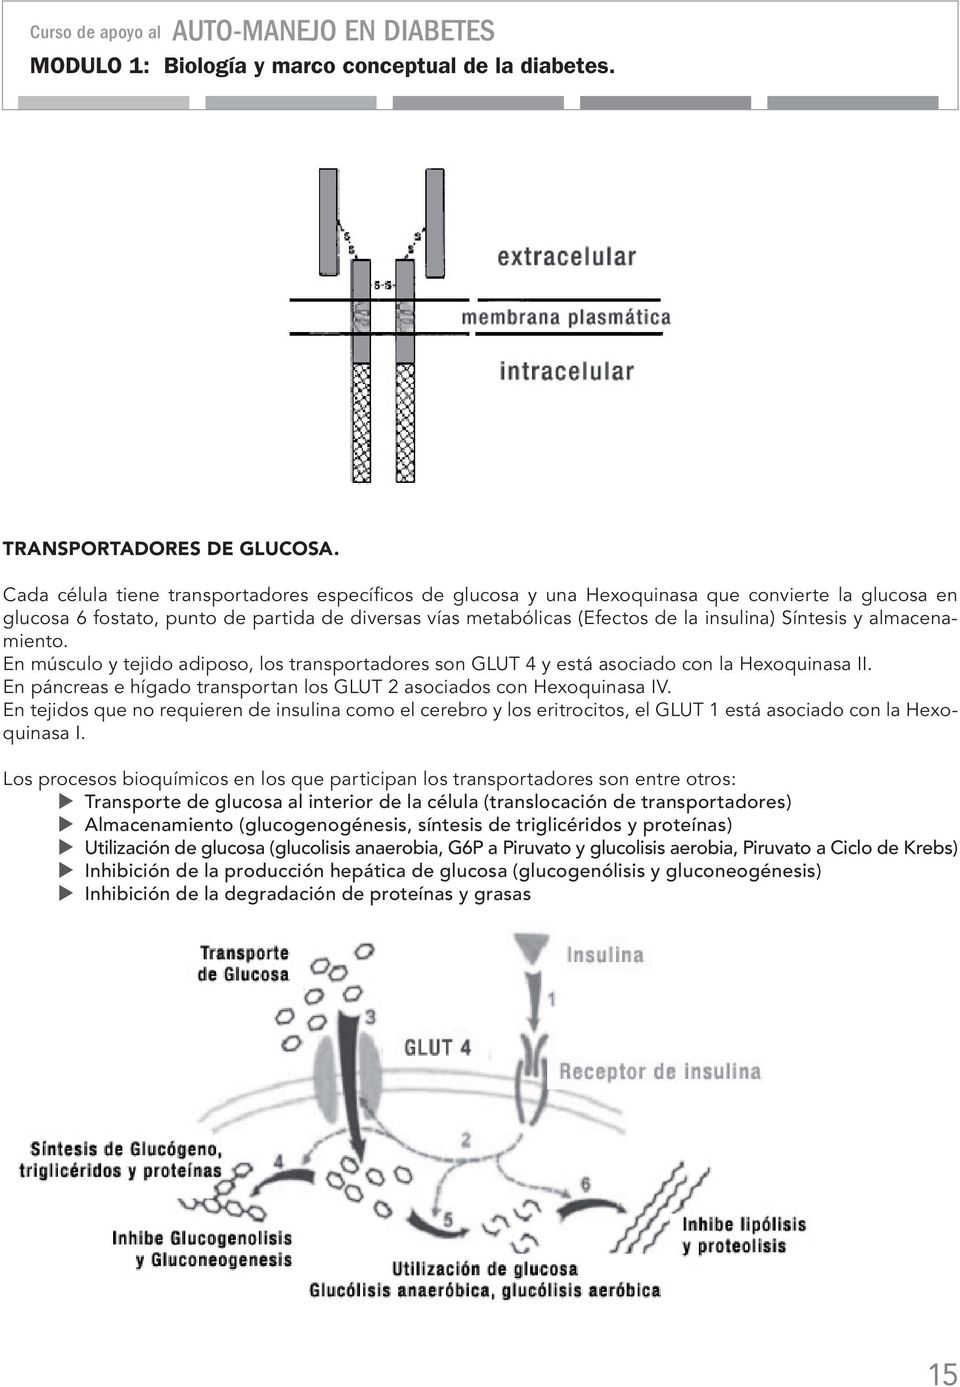 Síntesis y almacenamiento. En músculo y tejido adiposo, los transportadores son GLUT 4 y está asociado con la Hexoquinasa II. En páncreas e hígado transportan los GLUT 2 asociados con Hexoquinasa IV.